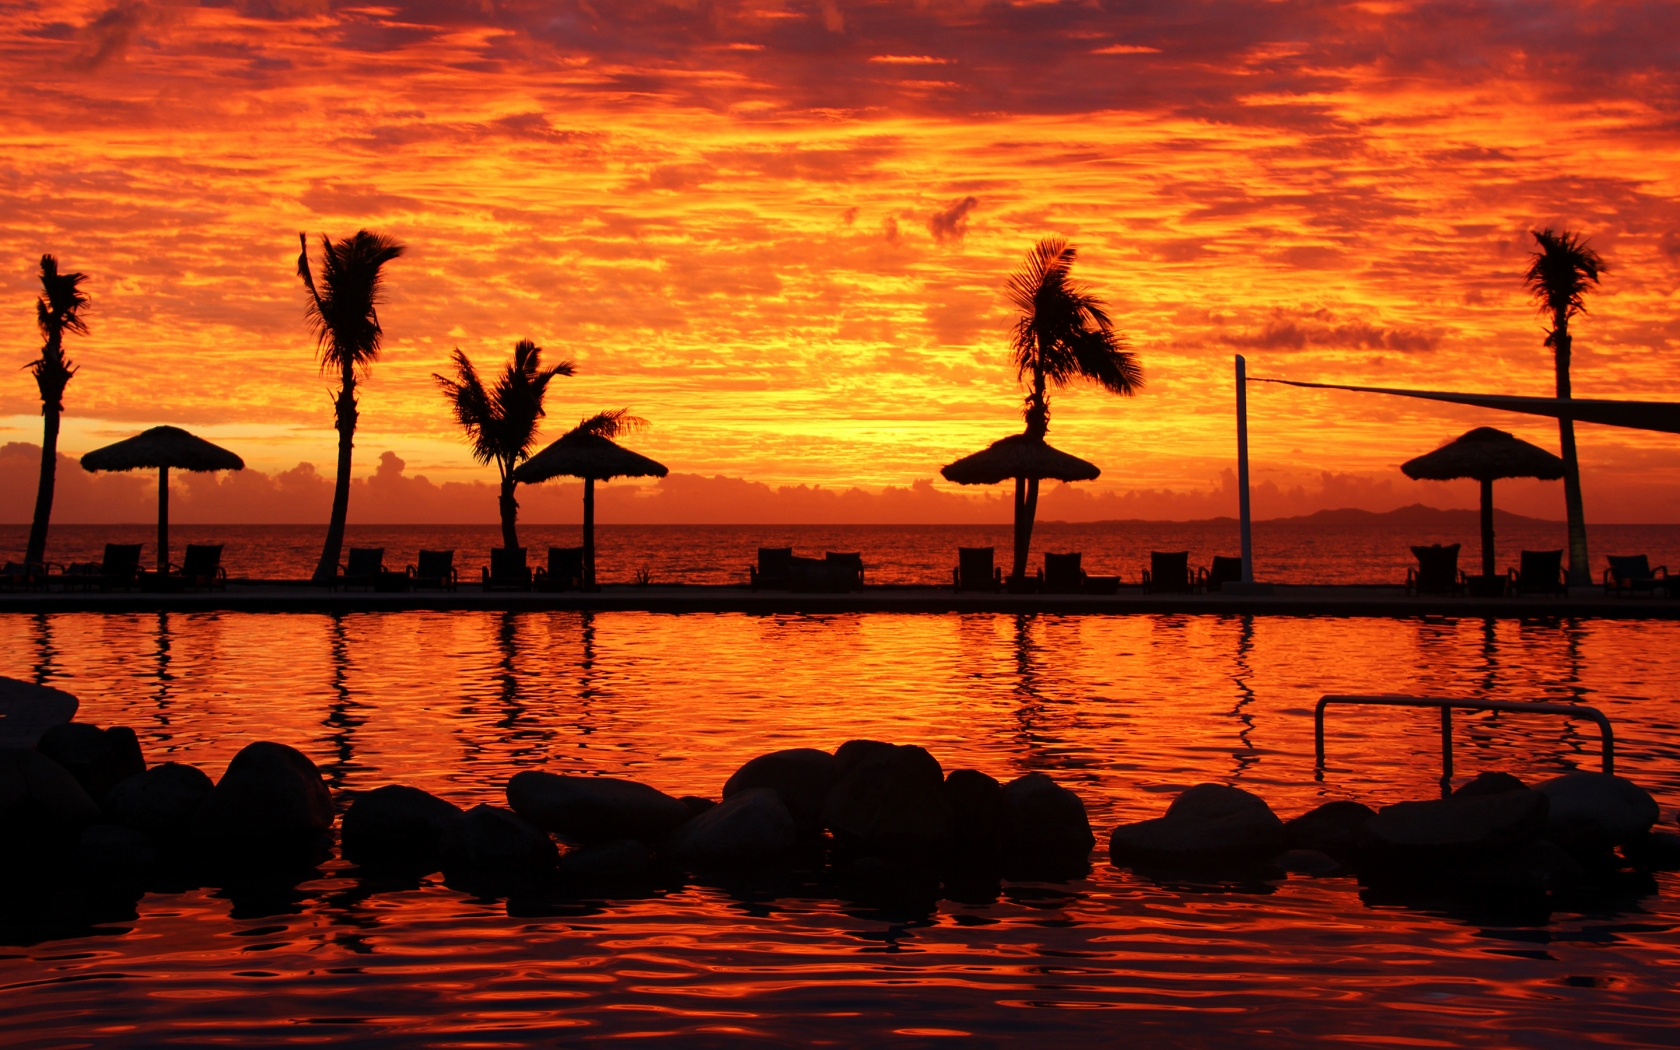 Fijian Sunset for 1680 x 1050 widescreen resolution